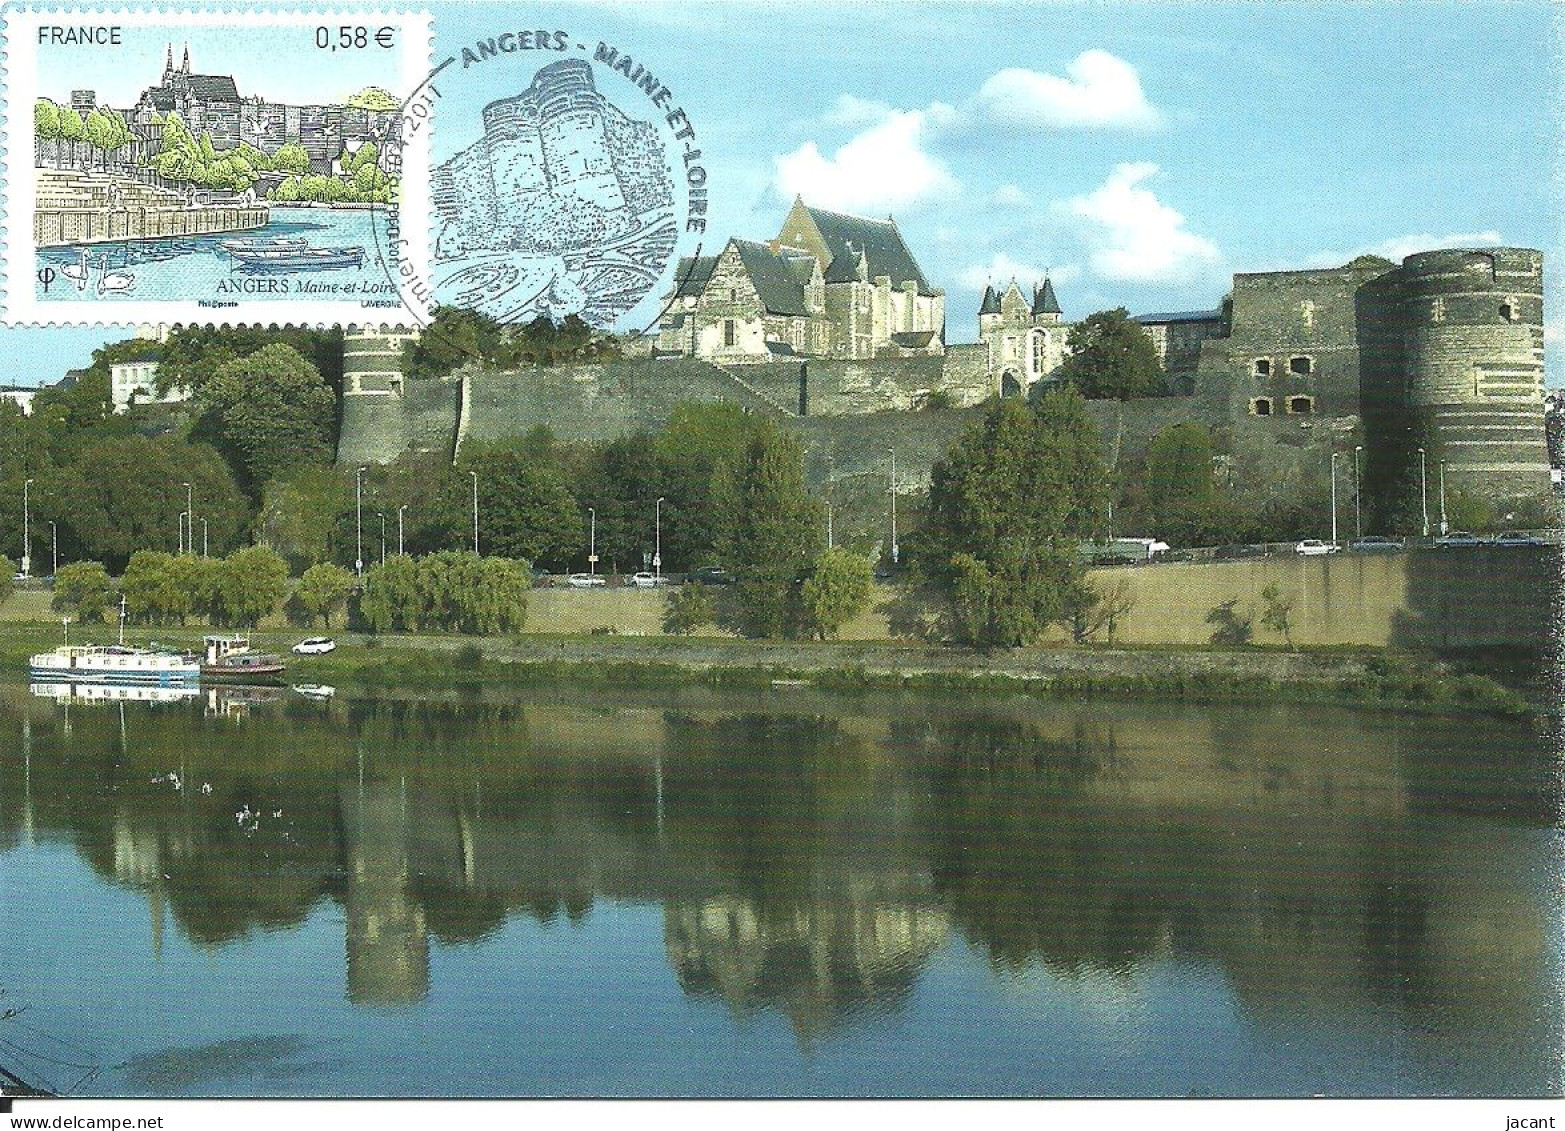 30813 - Carte Maximum - France - Angers - Cathedrale Chateau Et Loire - 2010-2019